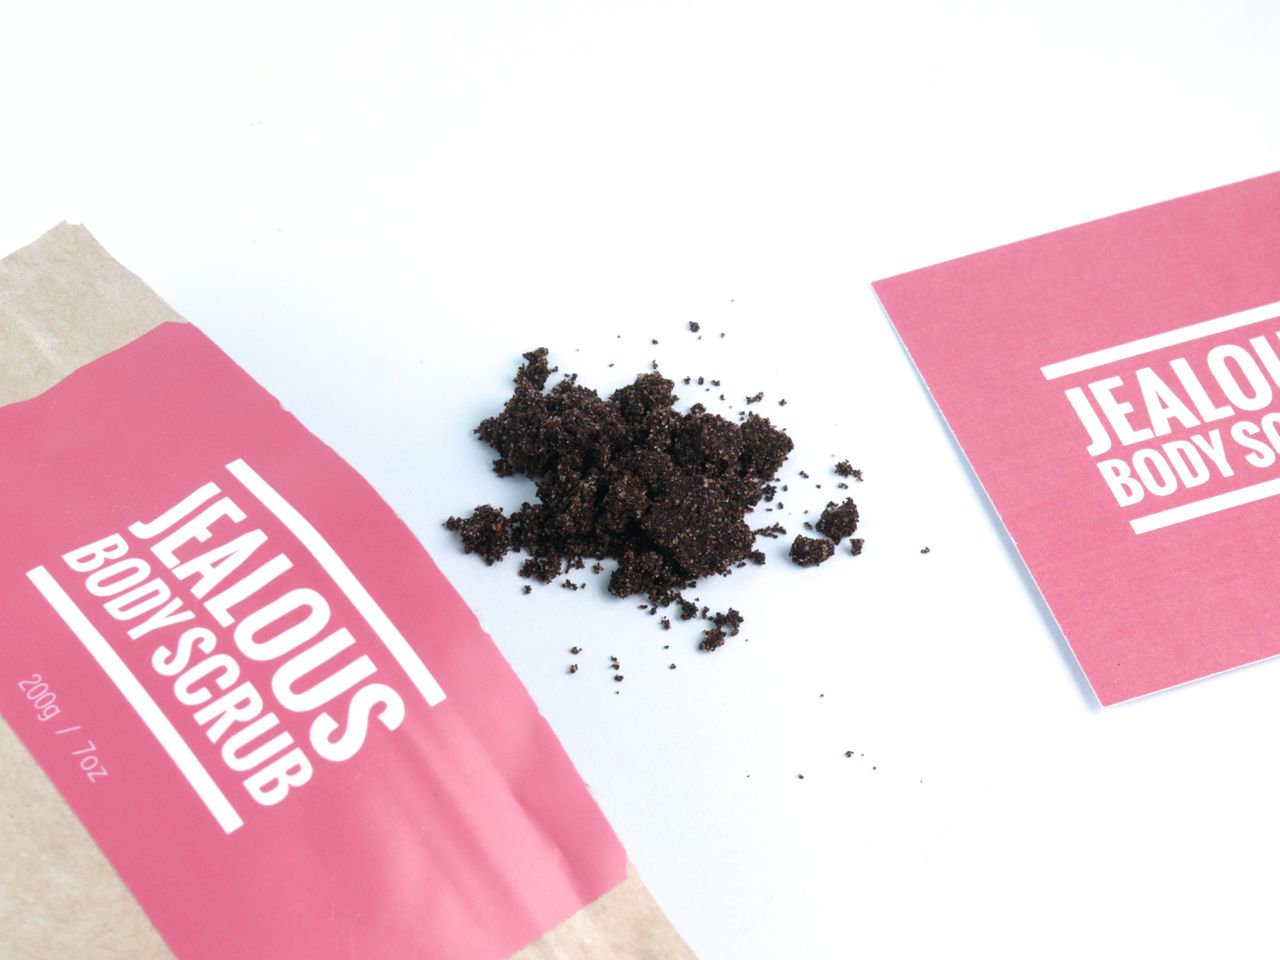 Jealous Body Scrub New Almond + Coffee Scrub: Review